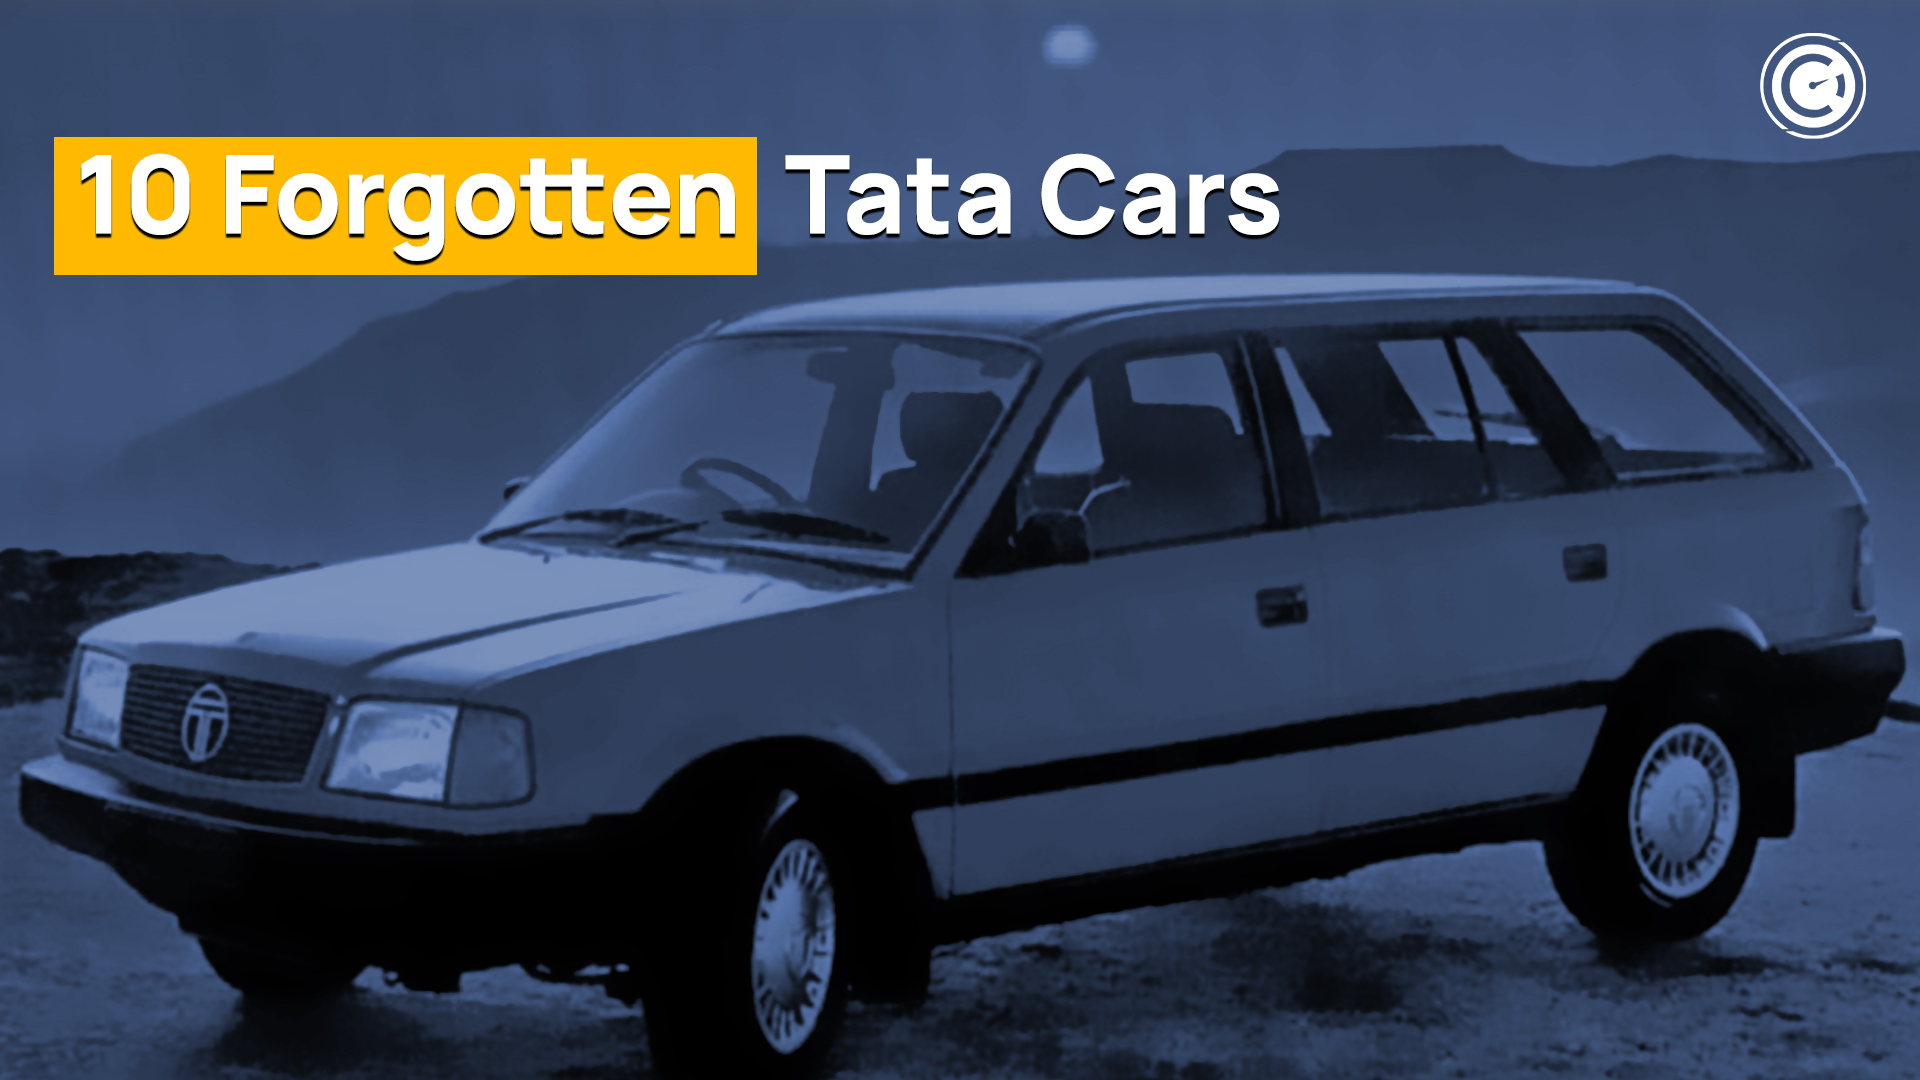 Forgotten Tata Cars